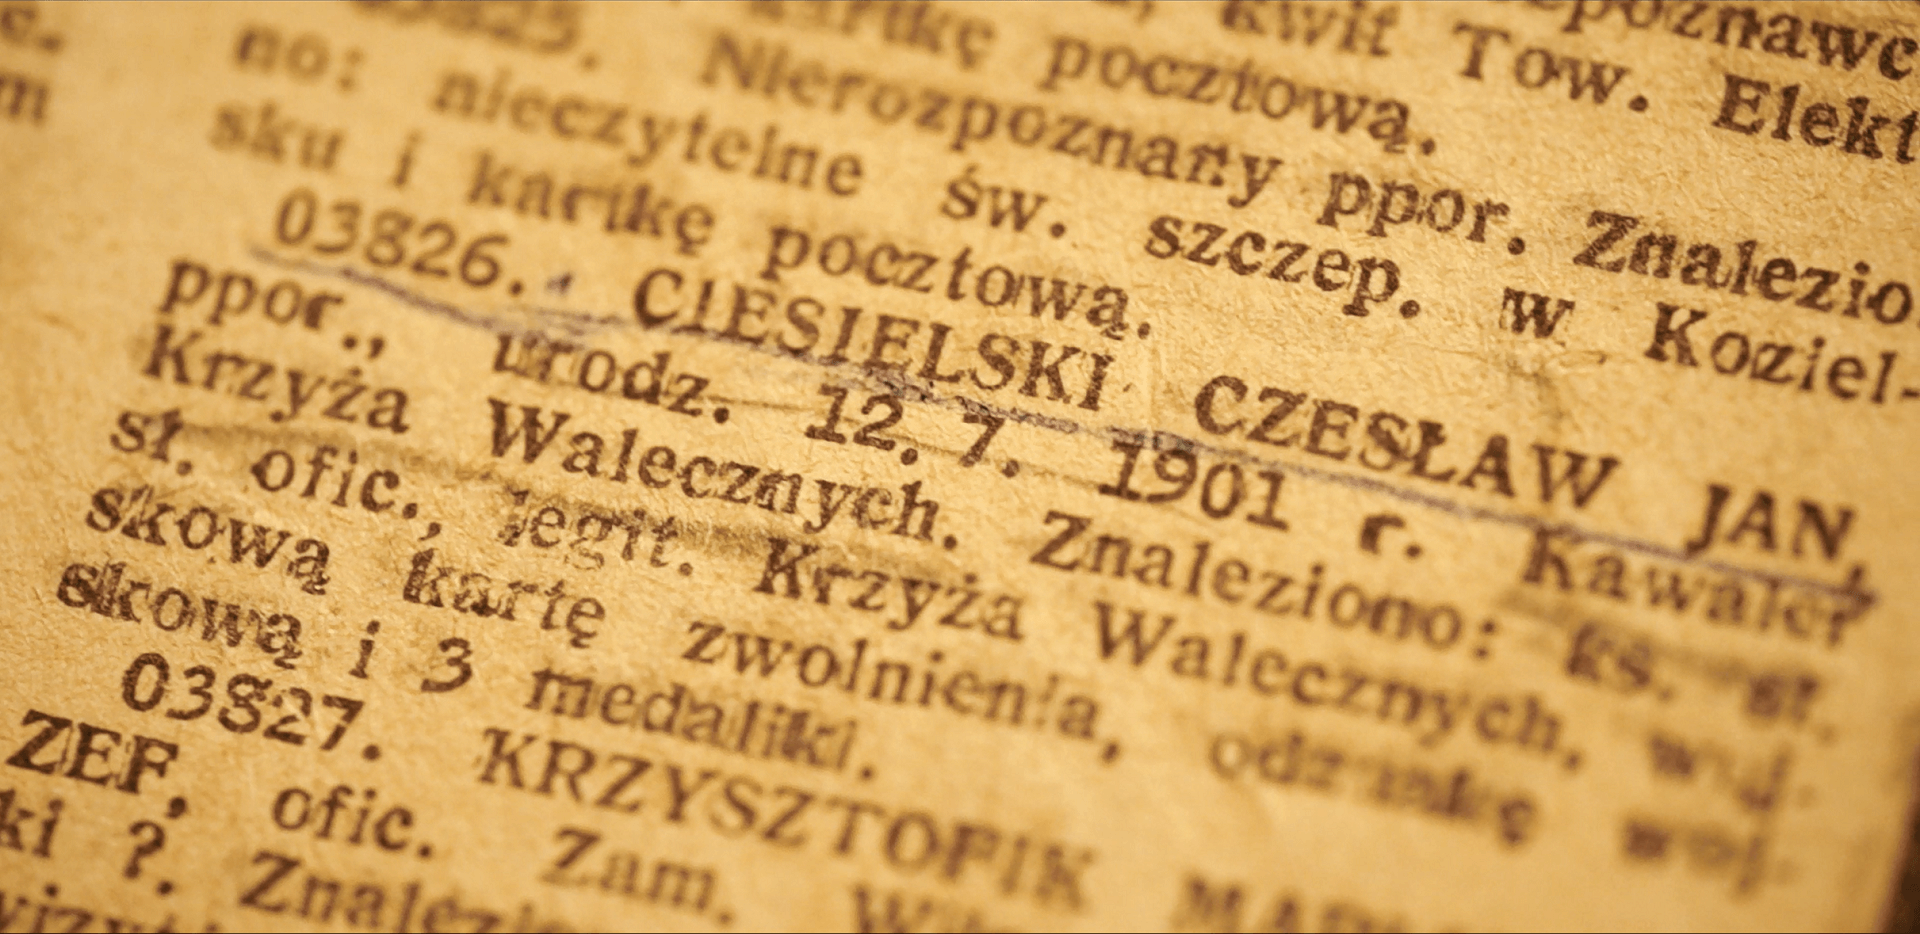 Fragment starej gazety. W tekście podkreśolny ołówiekiem fragment: 03826. Ciesieliski Czesław Jan,ppor., urodz. 12.7.1901 r. Kawaler Krzyża Walecznych.